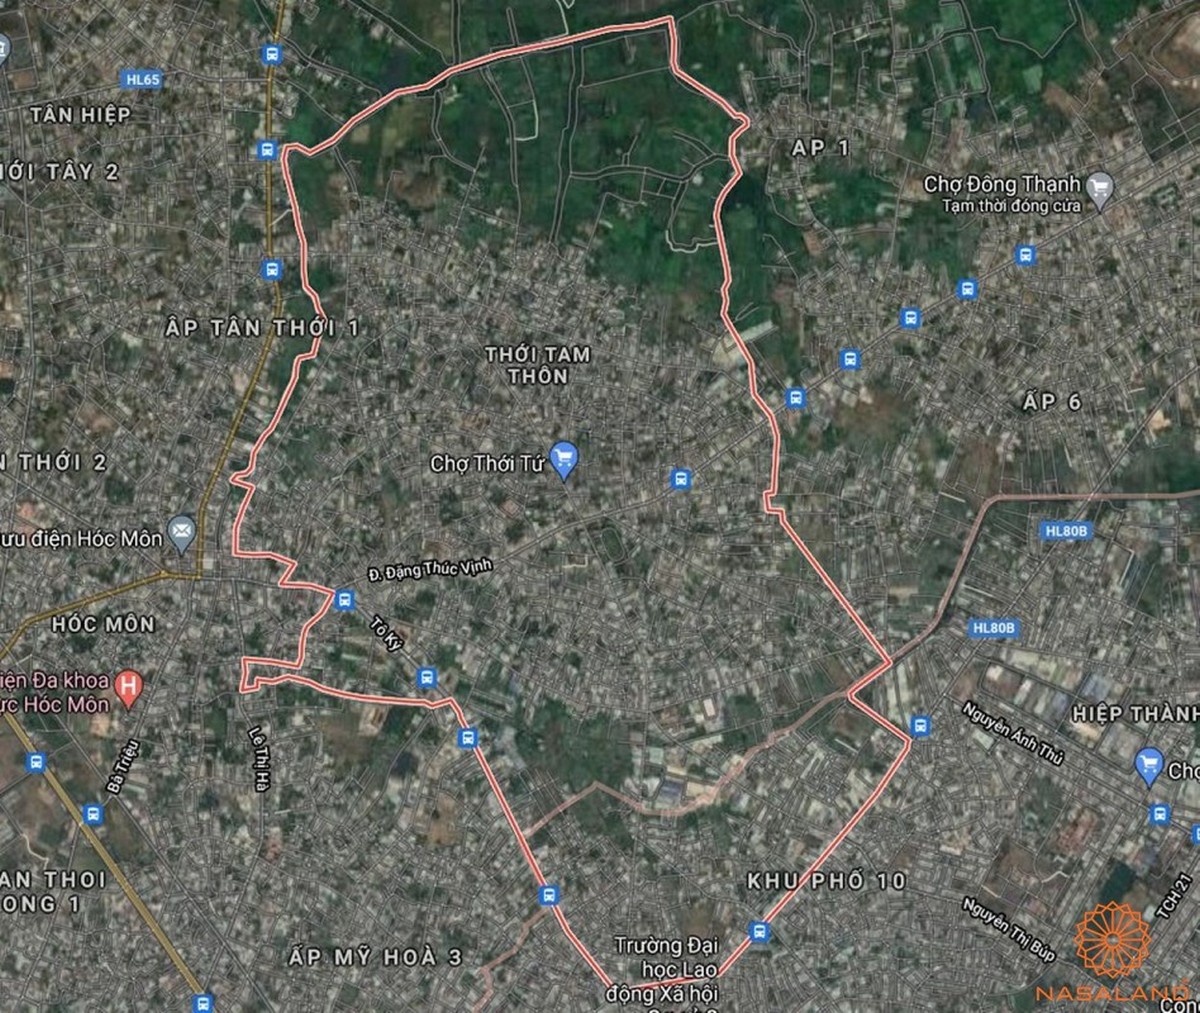 Quy hoạch sử dụng đất xã Thới Tam Thôn thể hiện trên bản đồ quy hoạch phân khu tỷ lệ 1/2000 của TP. HCM